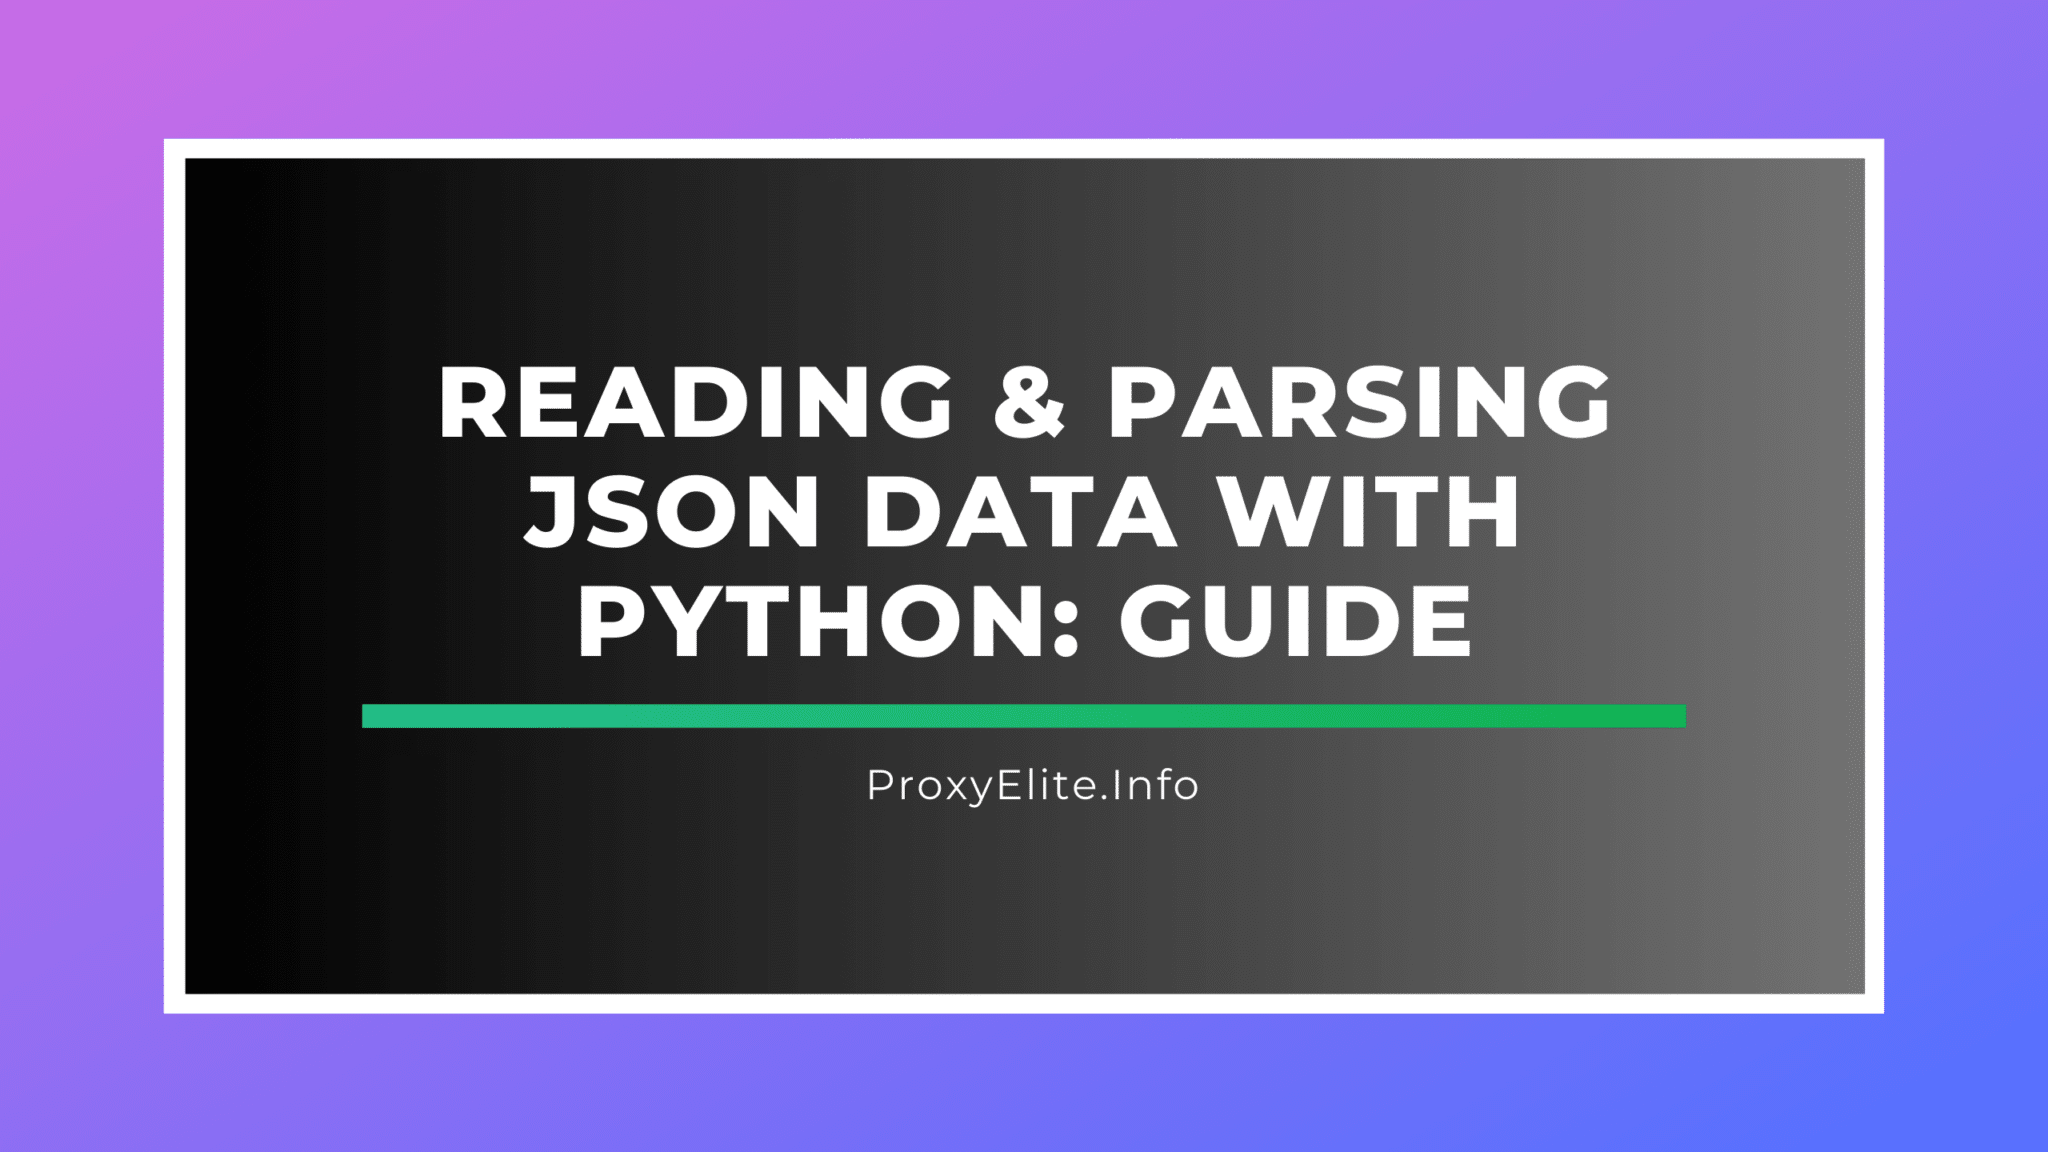 JSON-Daten mit Python lesen und analysieren: Anleitung